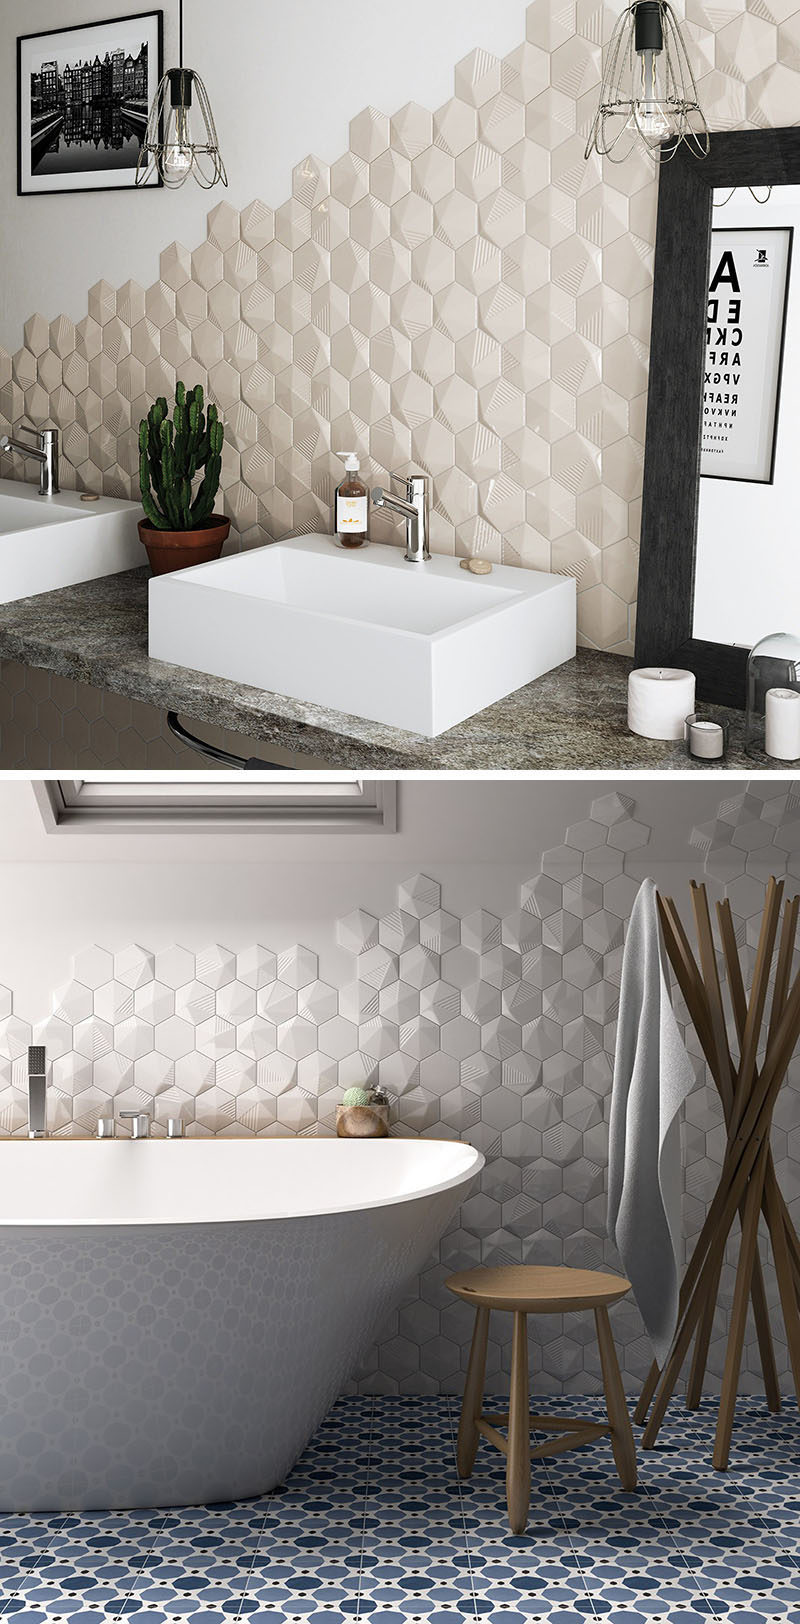 Идеи плитки для ванной комнаты - установите 3D-плитку, чтобы добавить текстуру в вашу ванную комнату // Шестиугольная плитка с добавлением текстуры, расположенная только на части стен, позволяет вам добавить глубины вашим стенам стильным способом, который не кажется подавляющим .